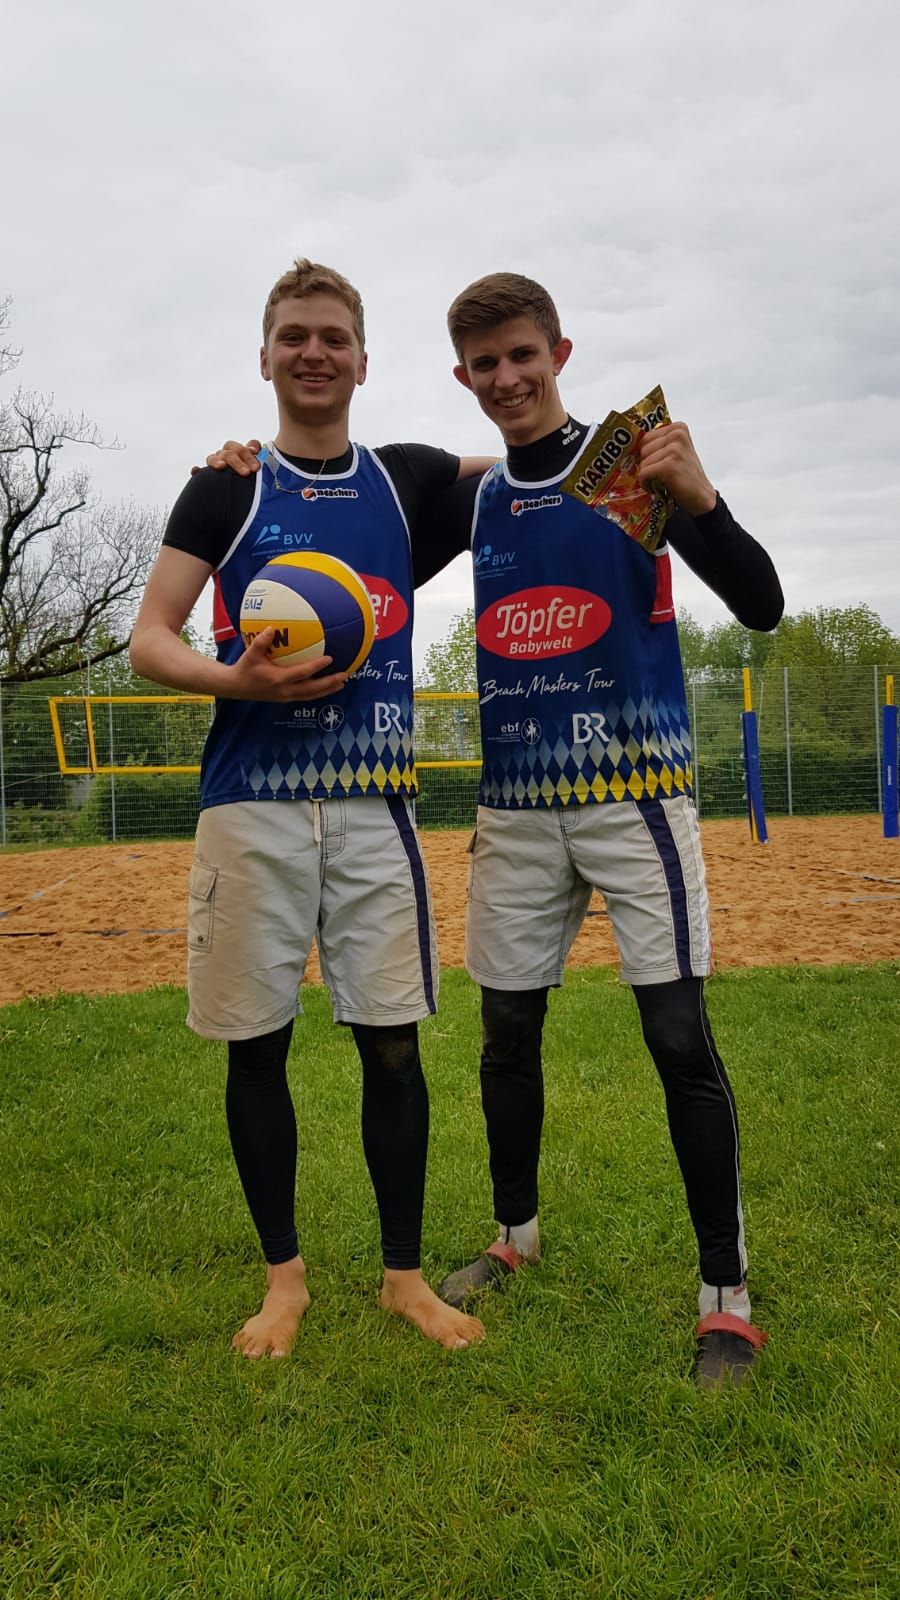 Paduretu gewinnt Beach Cup in Augsburg